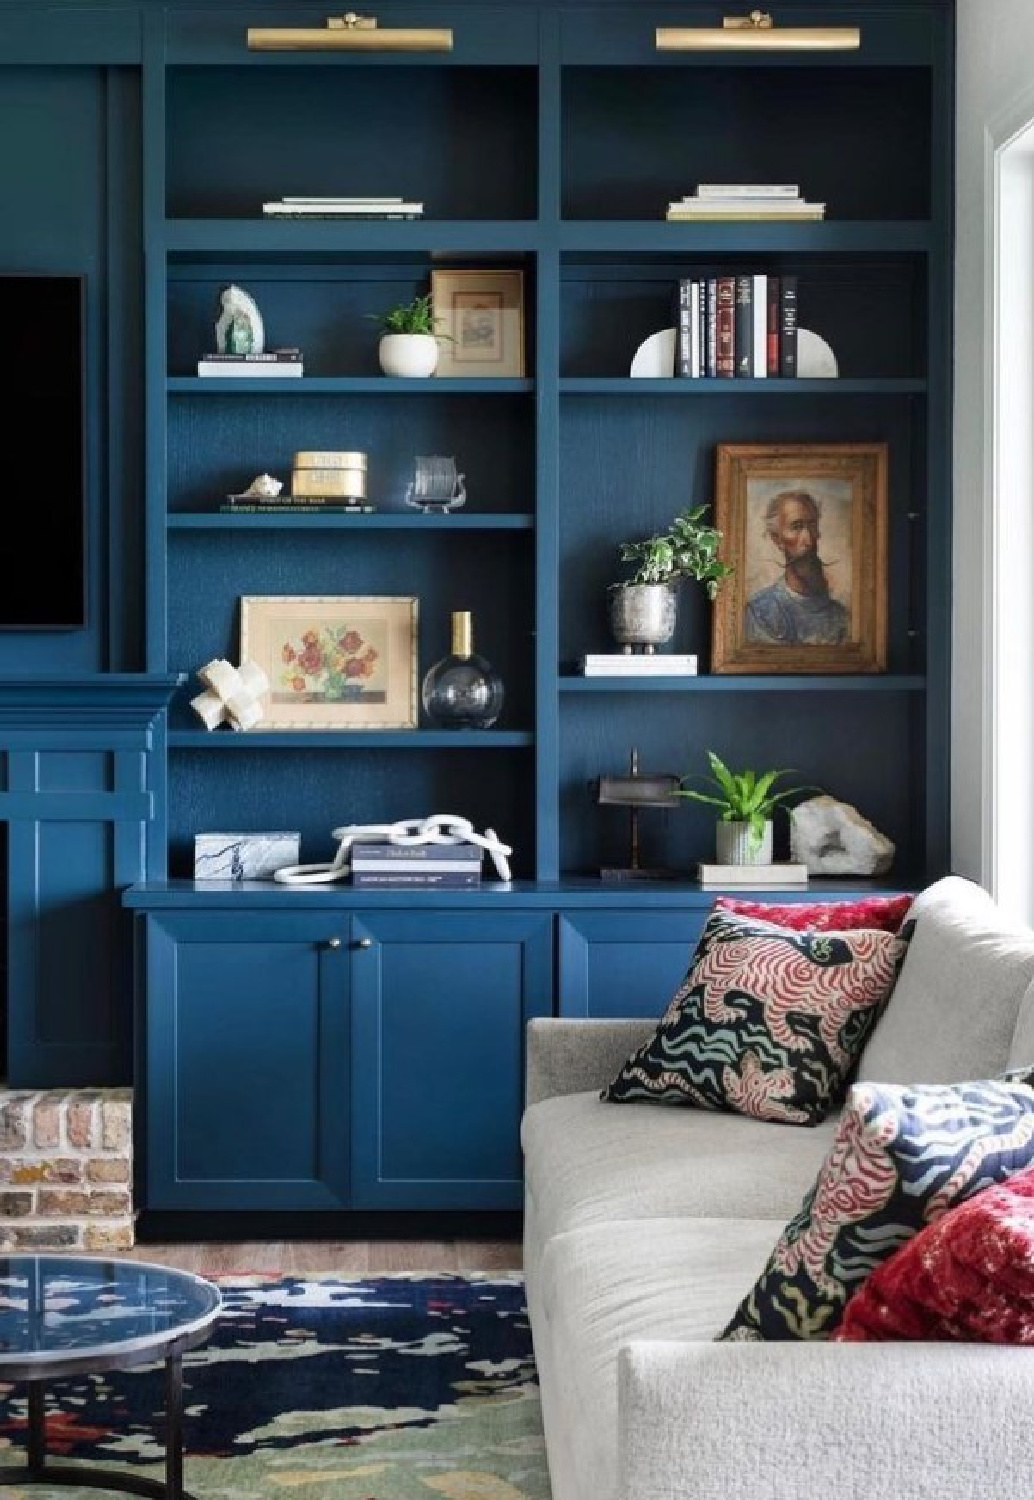 Farrow & Ball Hague Blue on built-ins in a living space with classic style. #farrowandballhagueblue